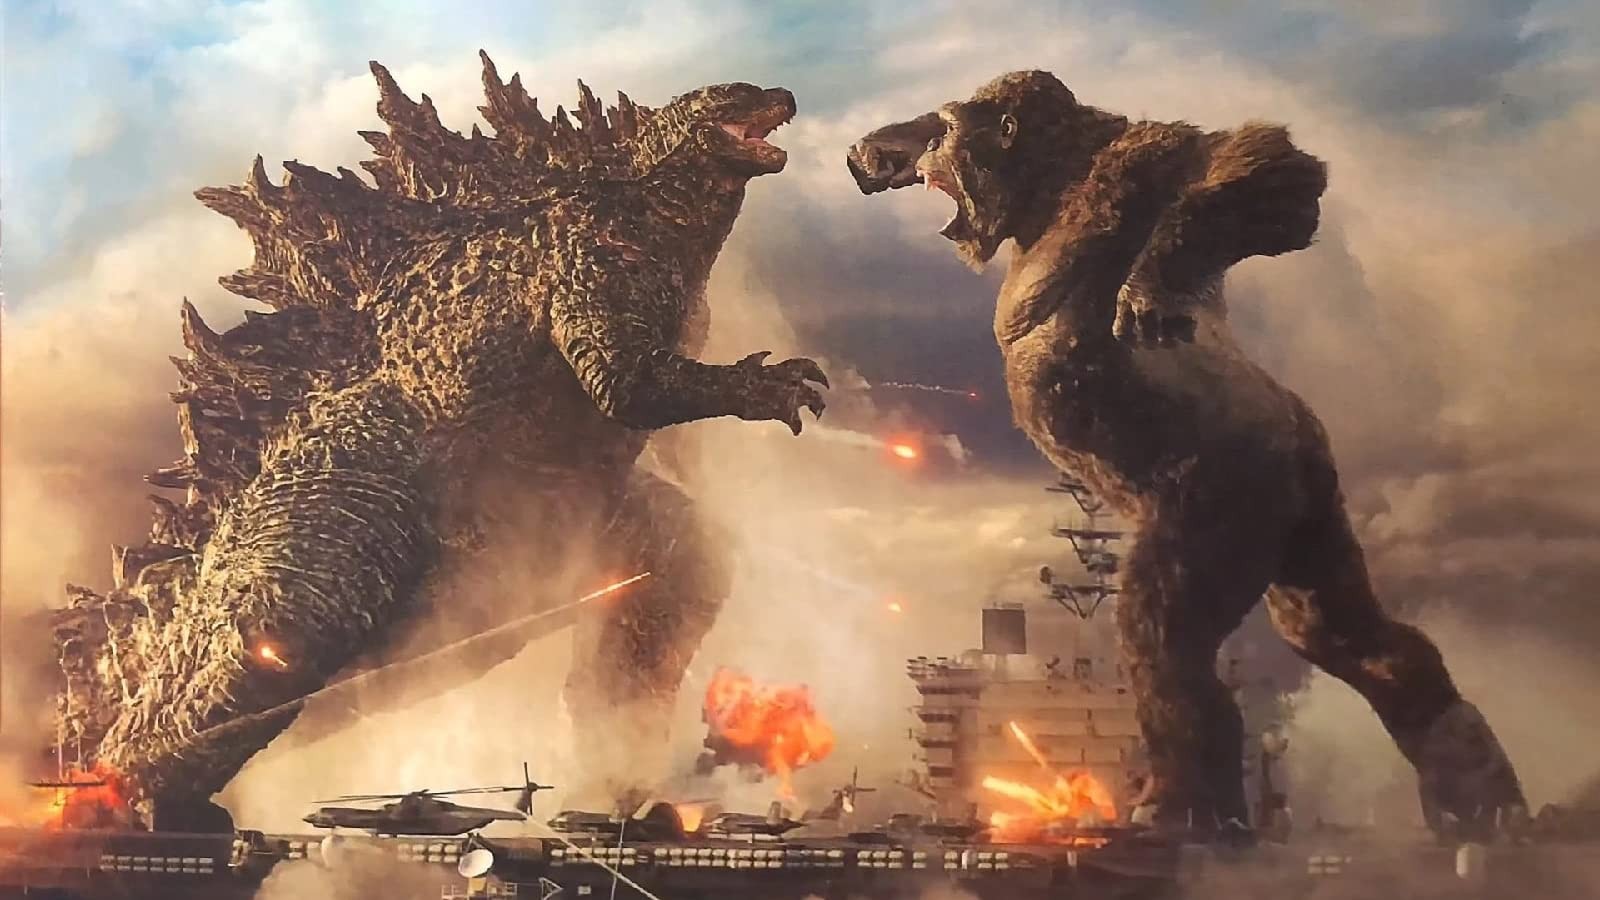 Kong and Godzilla battle it out in 2021's Godzilla vs Kong